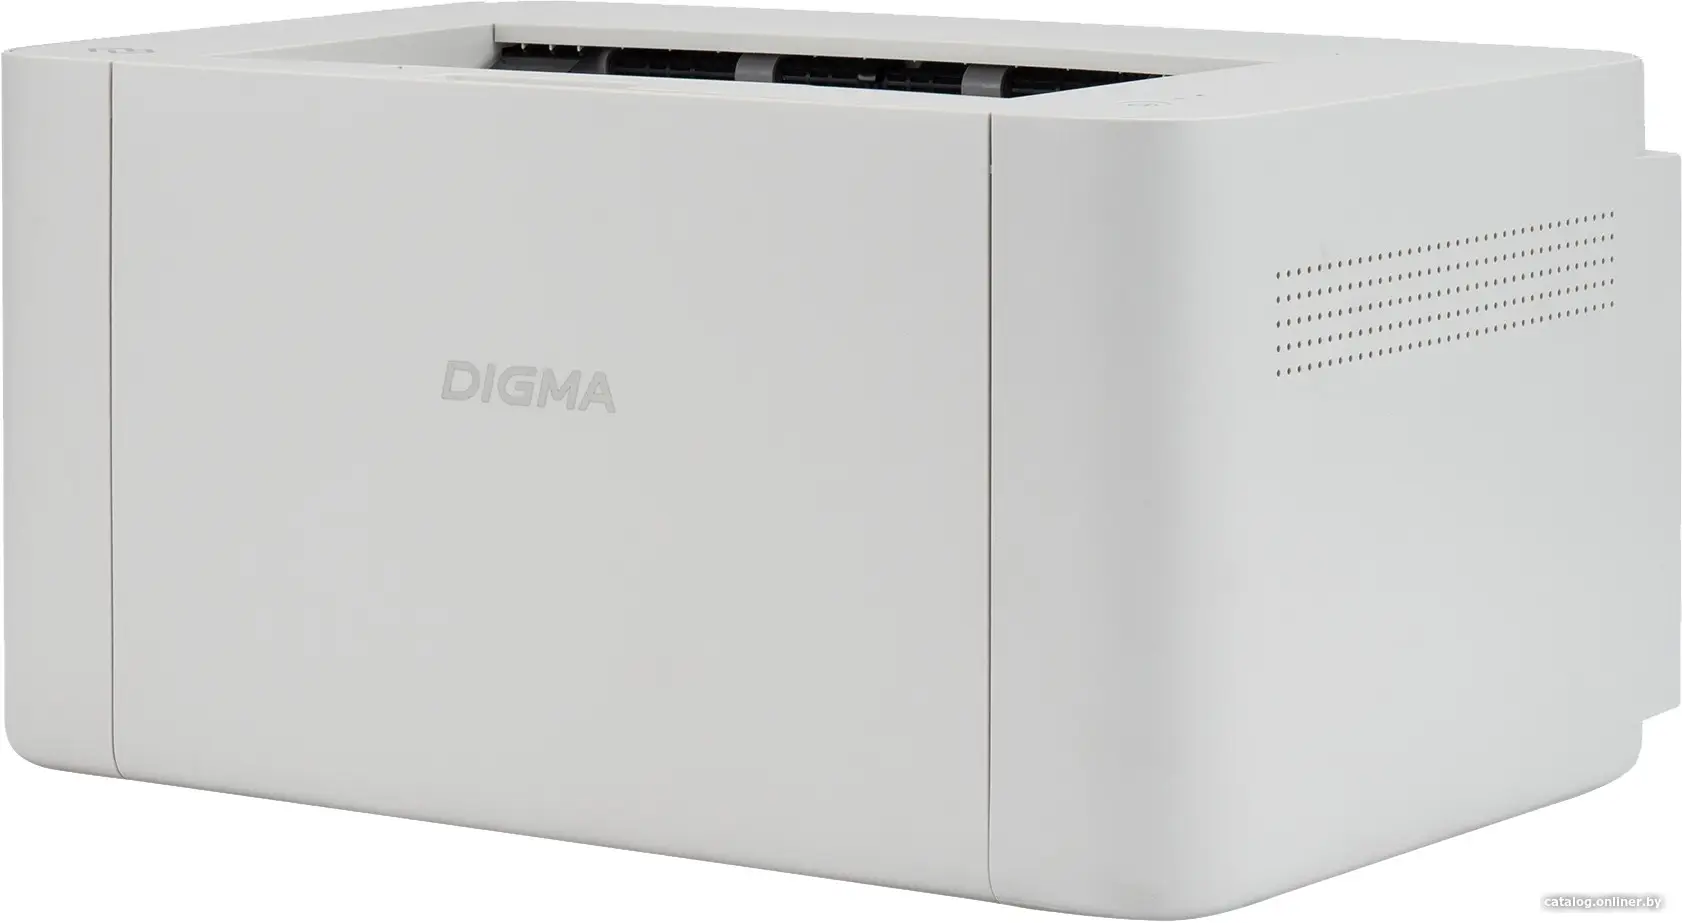 Принтер Digma DHP-2401W серый